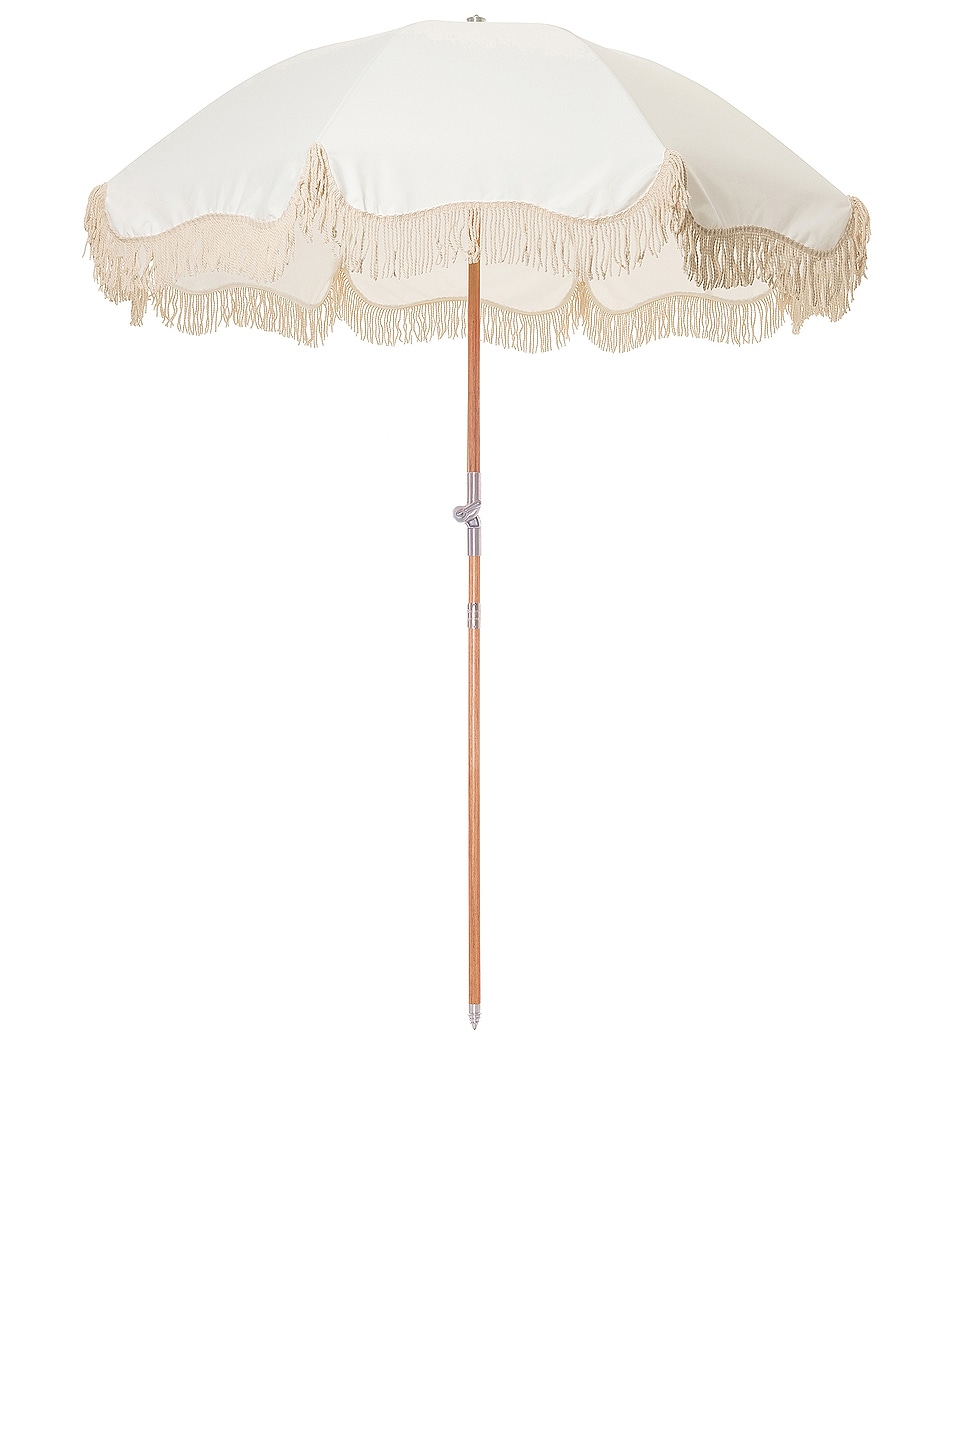 Premium Beach Umbrella in White